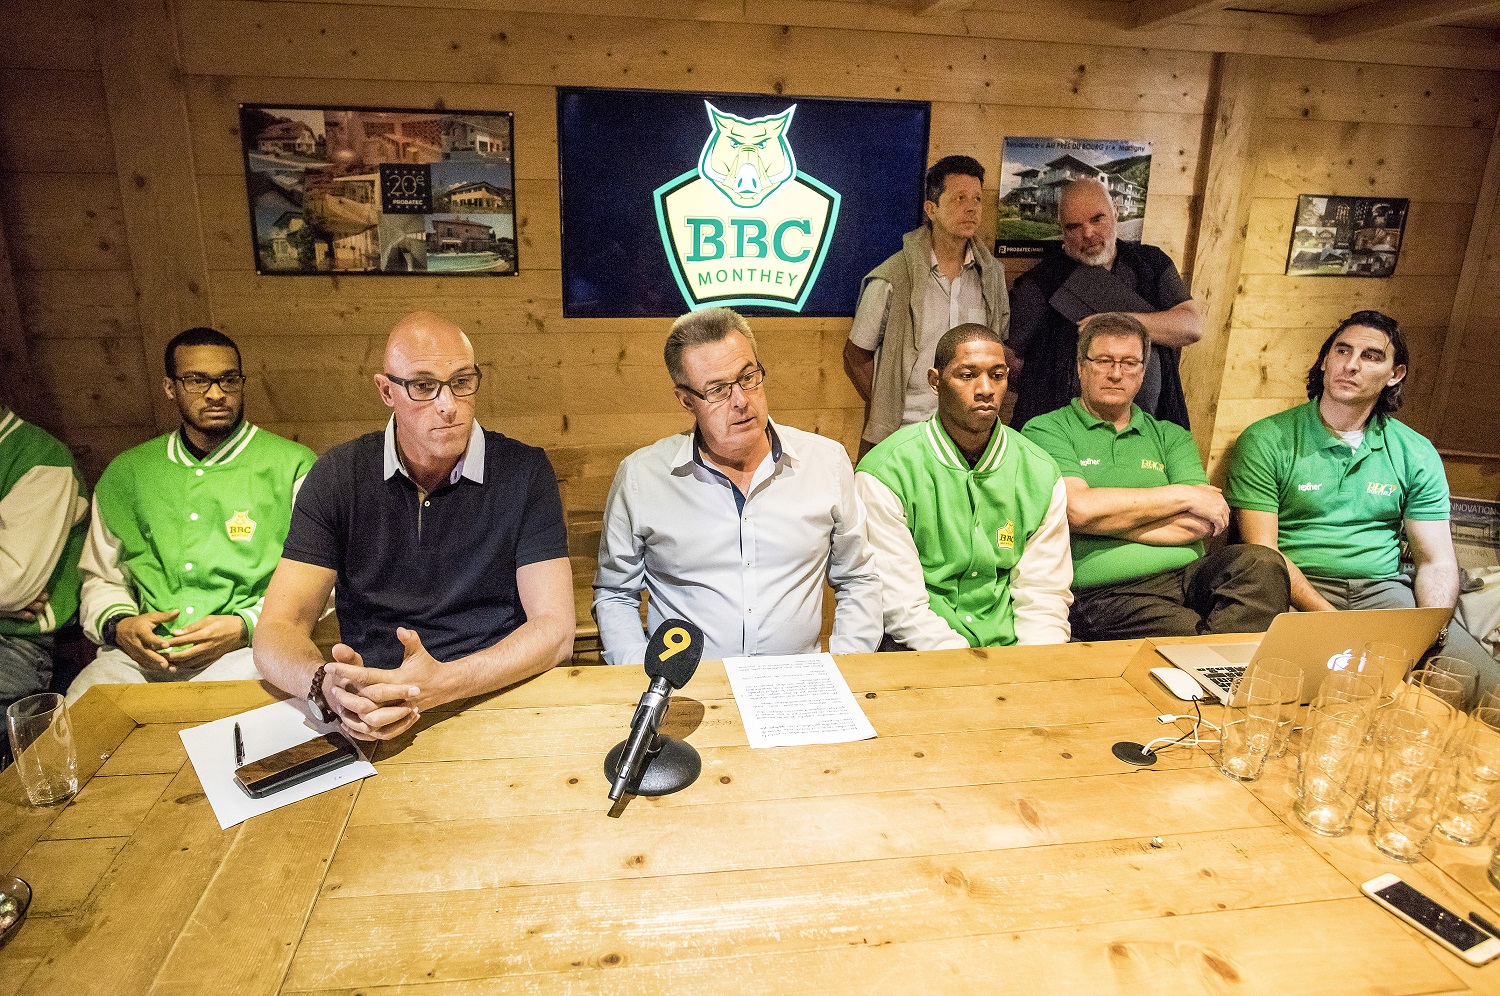 Conférence de presse des dirigeants du BBC Monthey suite aux débordements du staff et de certains joueurs à la finale de la Coupe de Suisse à Genève.